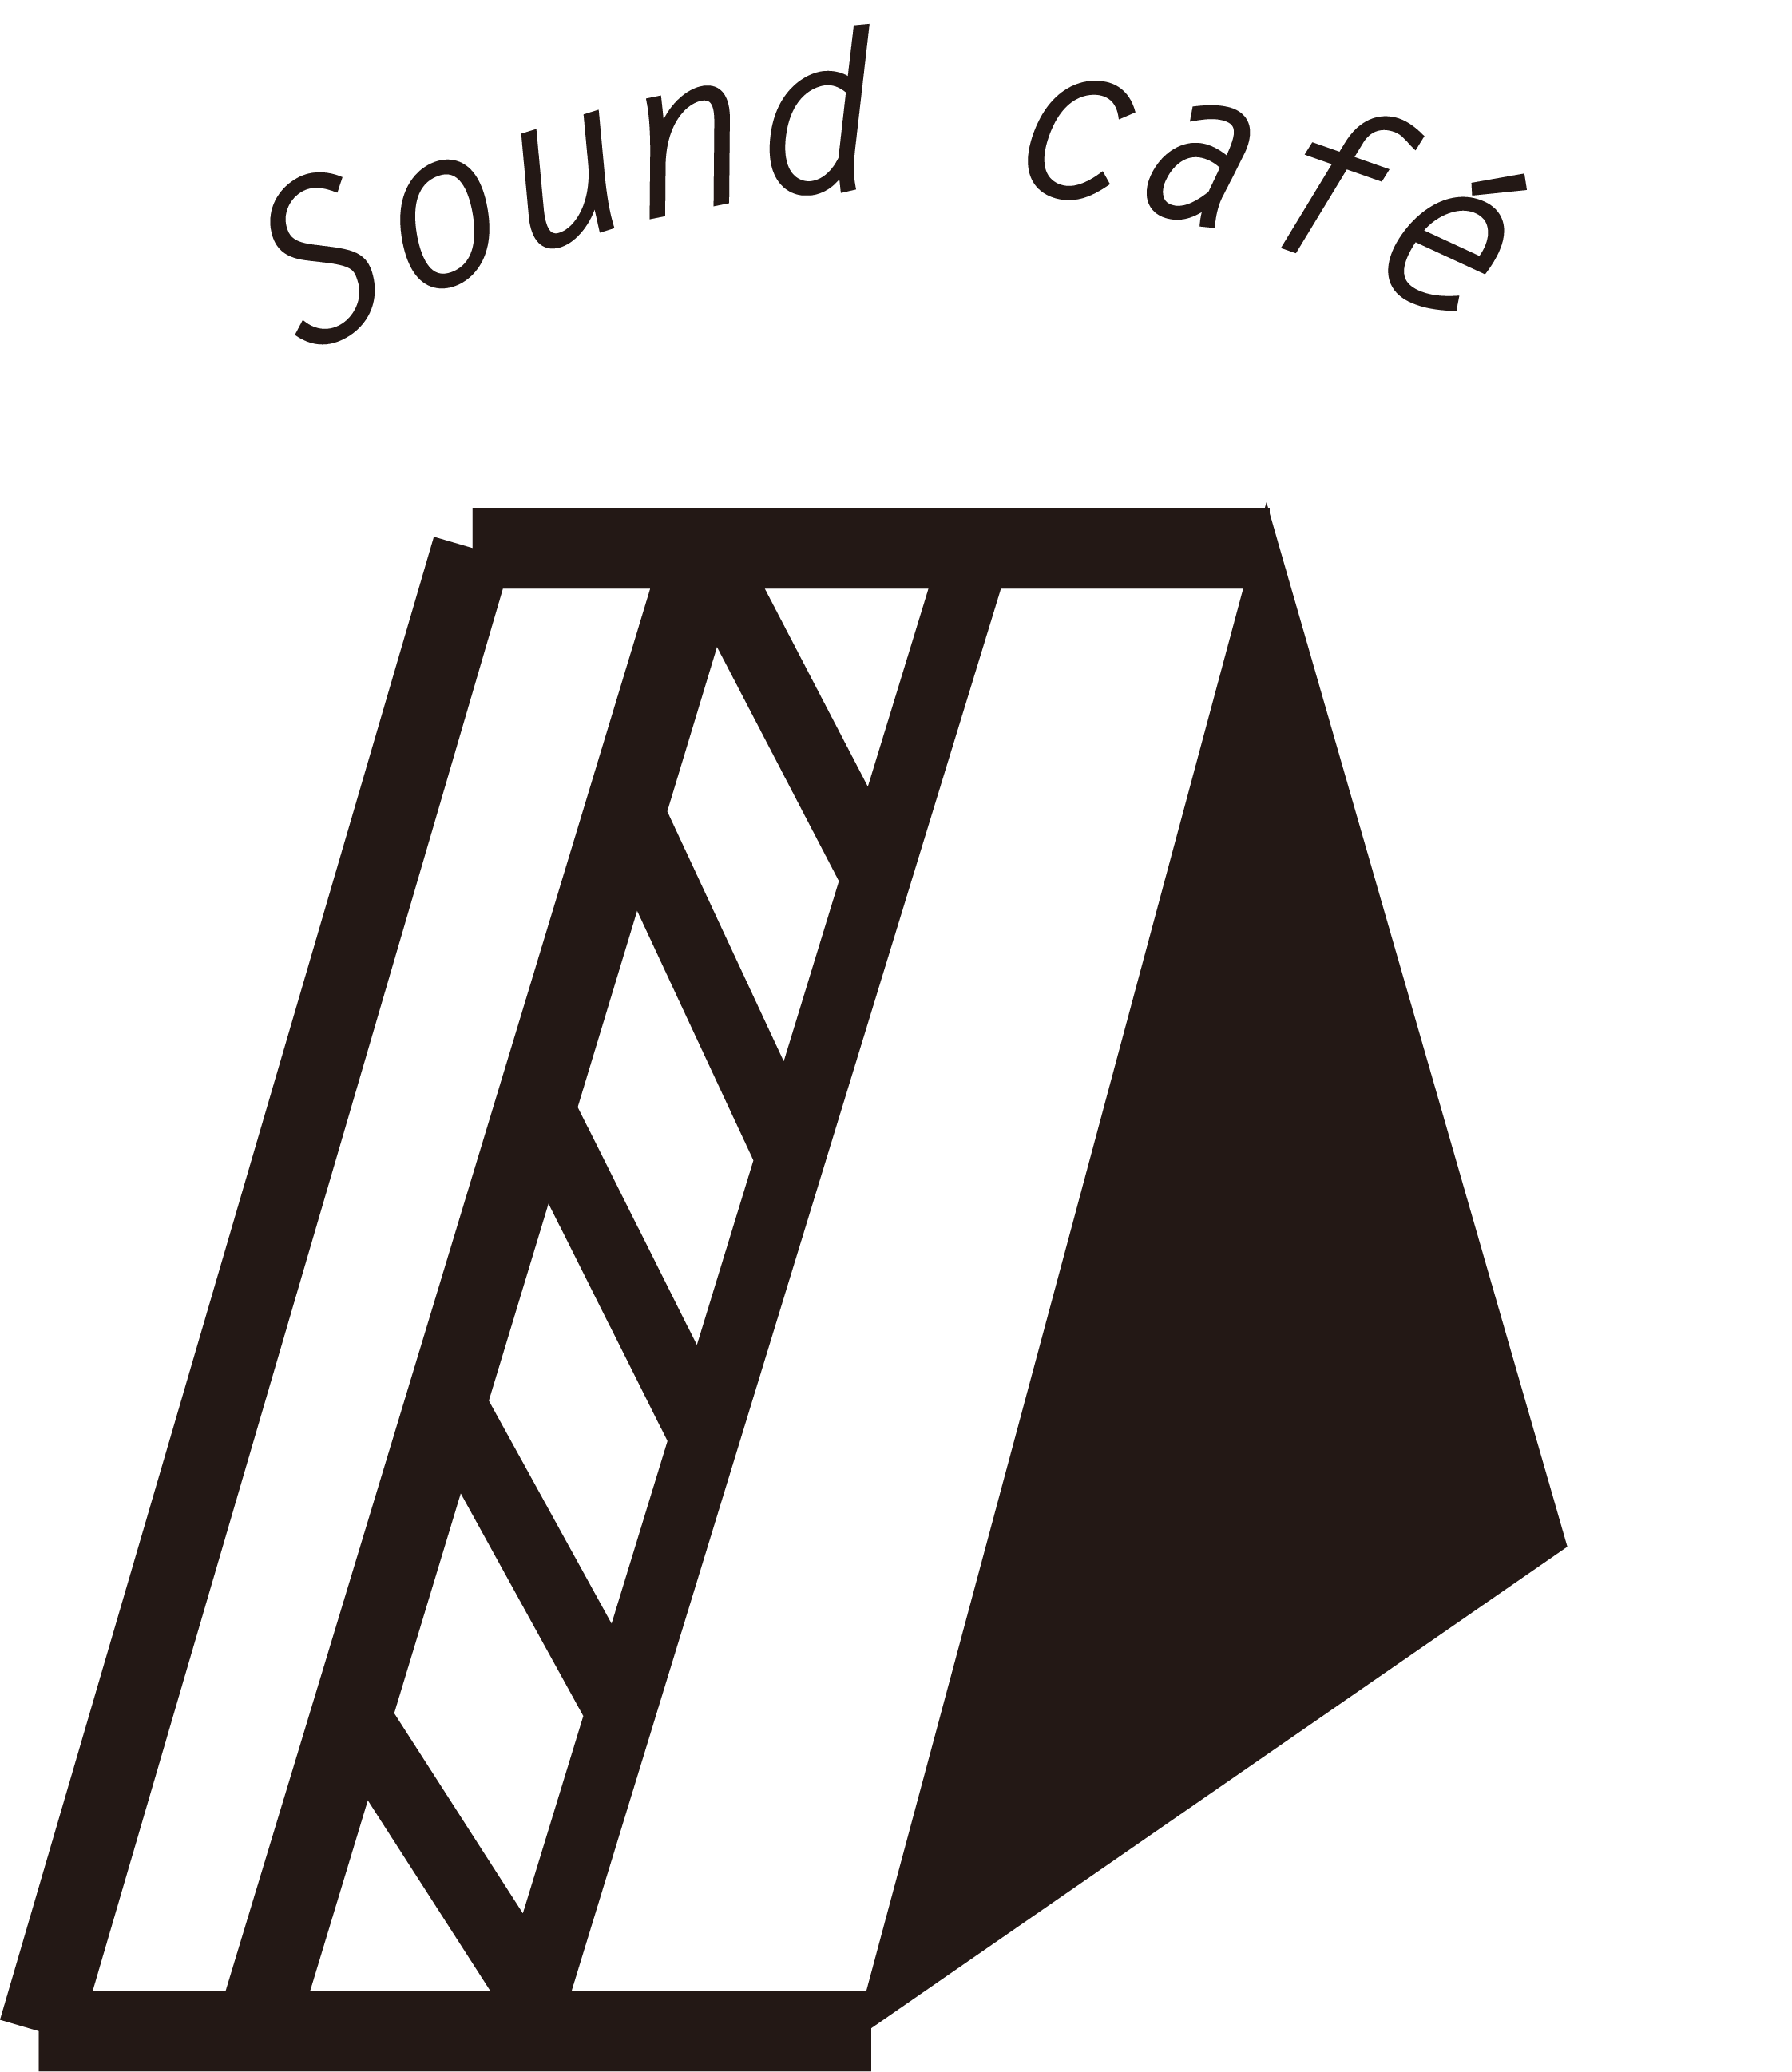 カフェのロゴ(ペルソナ)